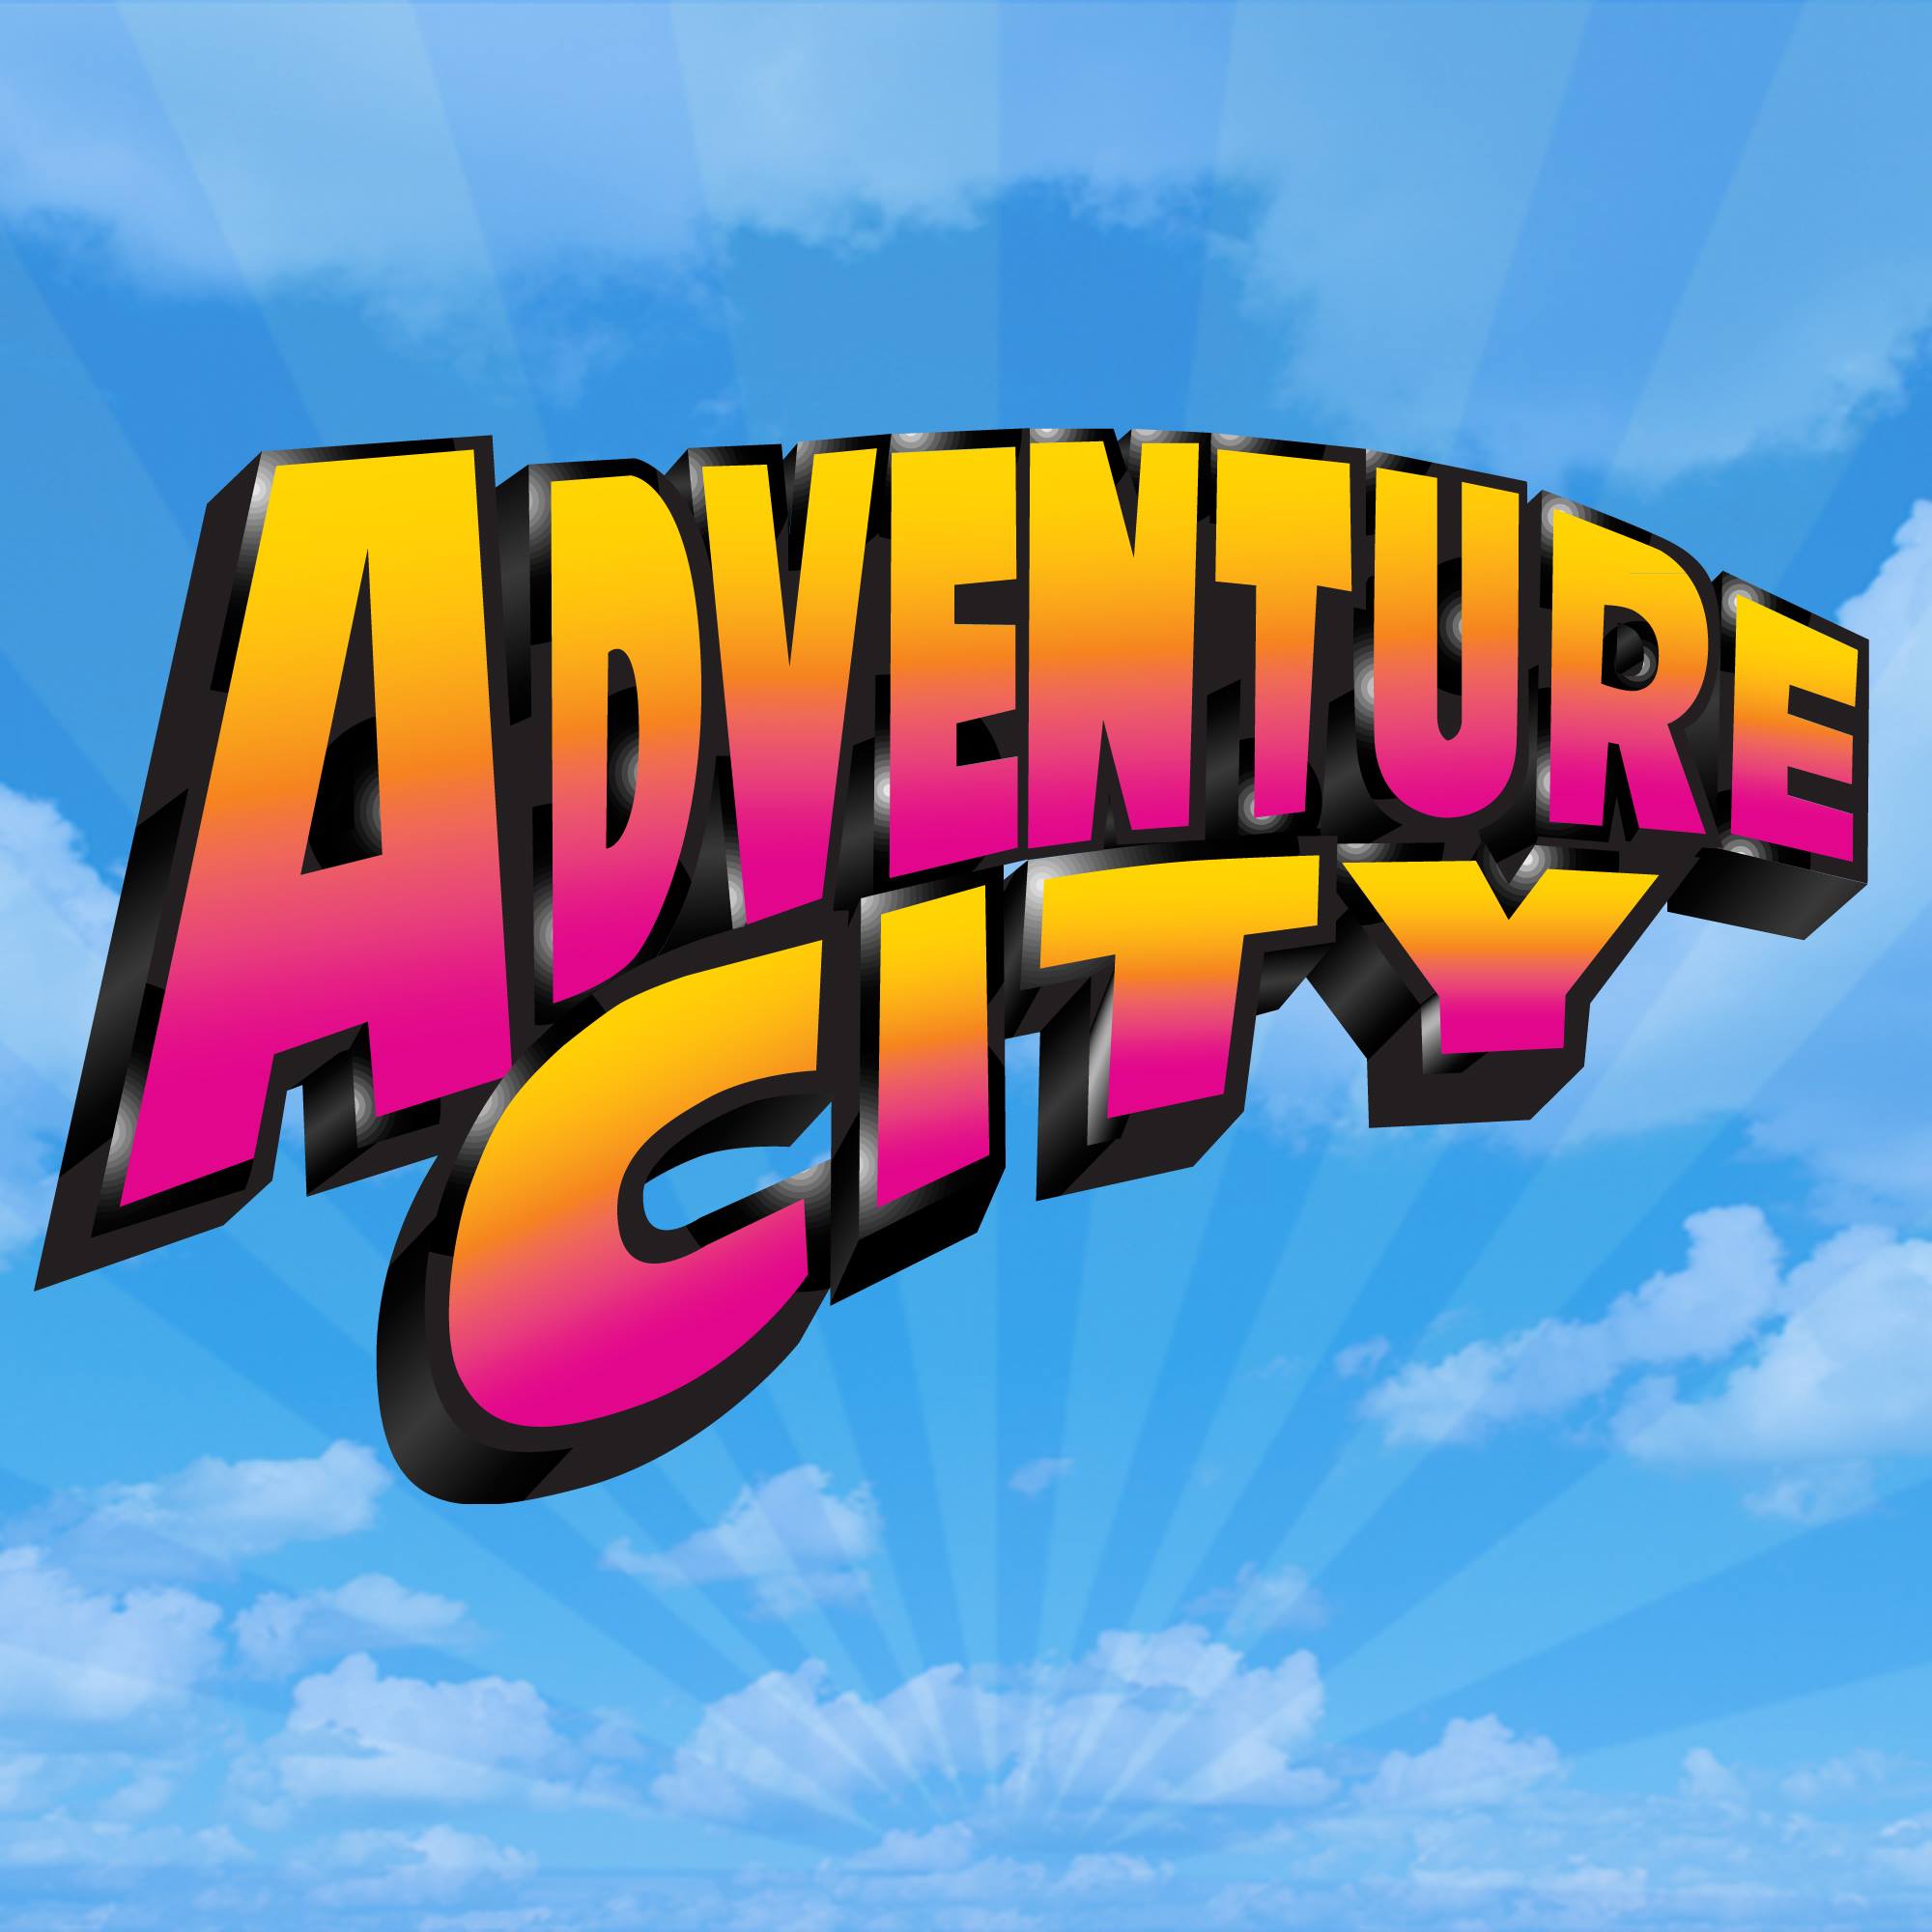 Adventure City|Theme Park|Entertainment